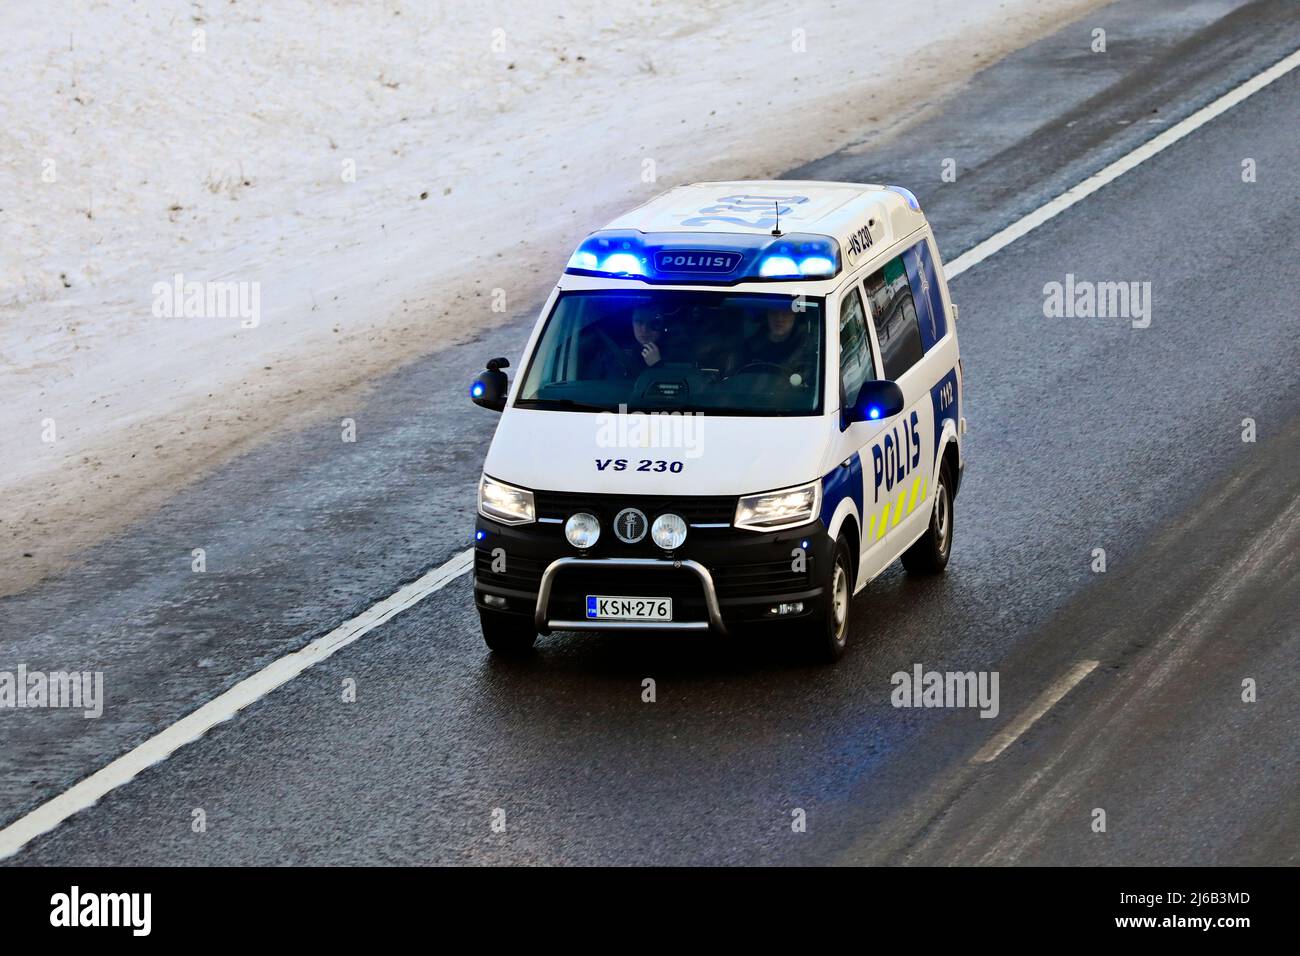 Veicolo di polizia a velocità in autostrada per chiamate di emergenza, luci blu lampeggianti. Salo, Finlandia. Dicembre 31, 2021. Foto Stock